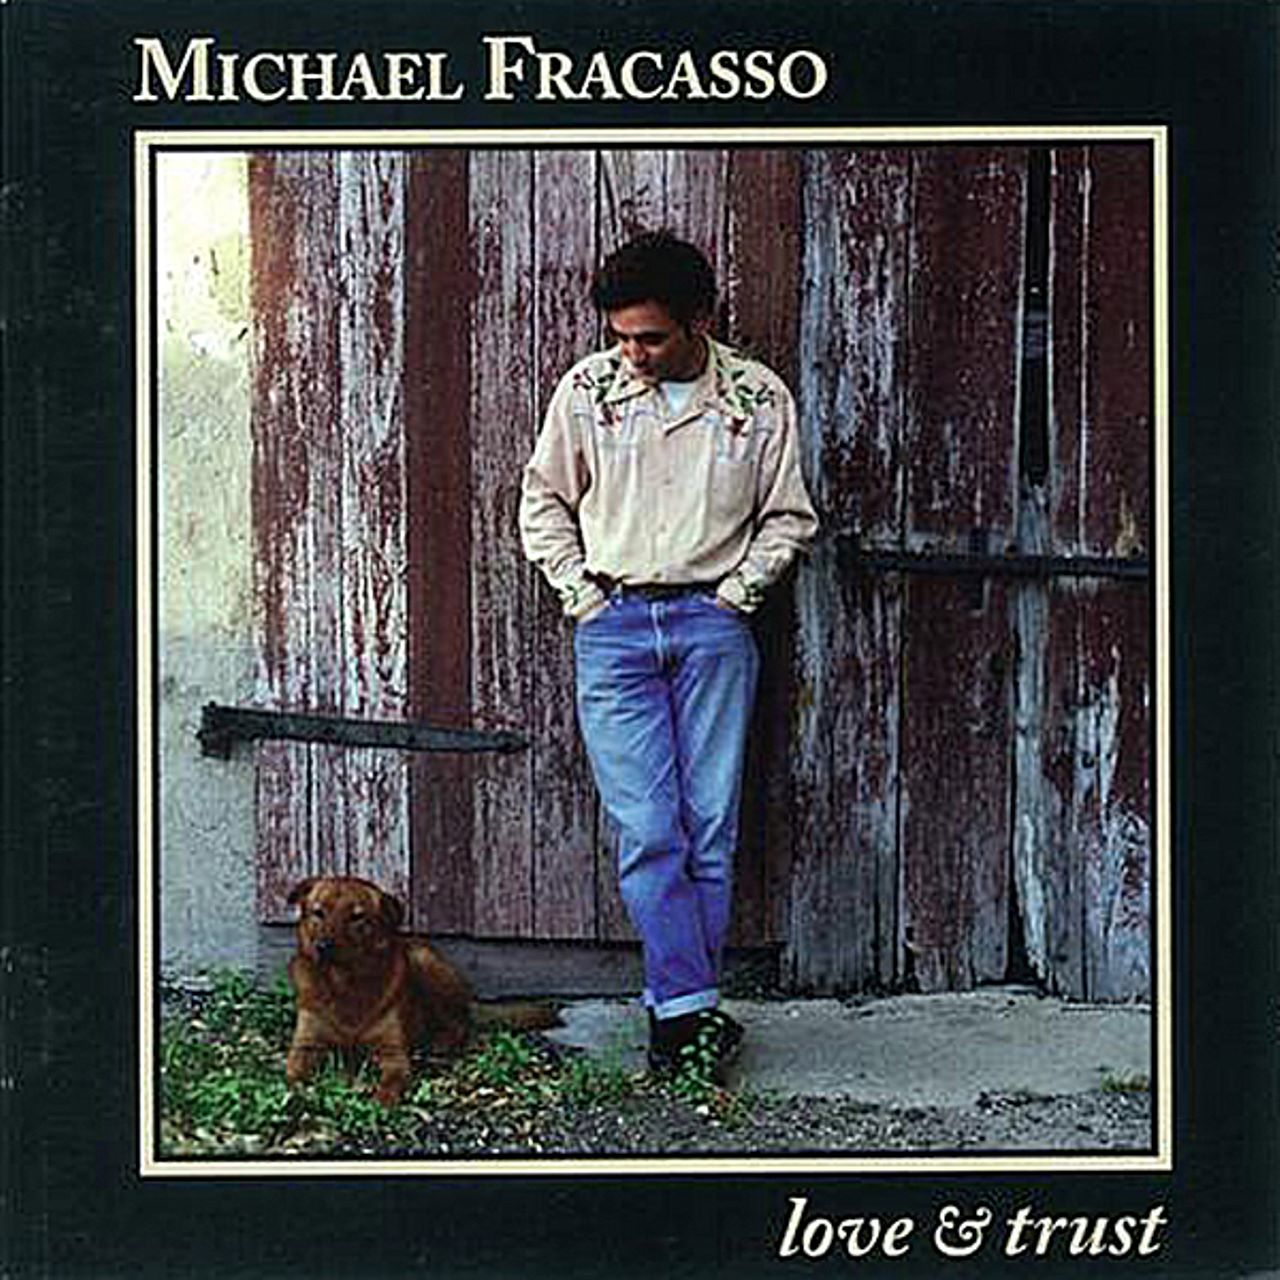 Michael Fracasso - Love & Trust cover album